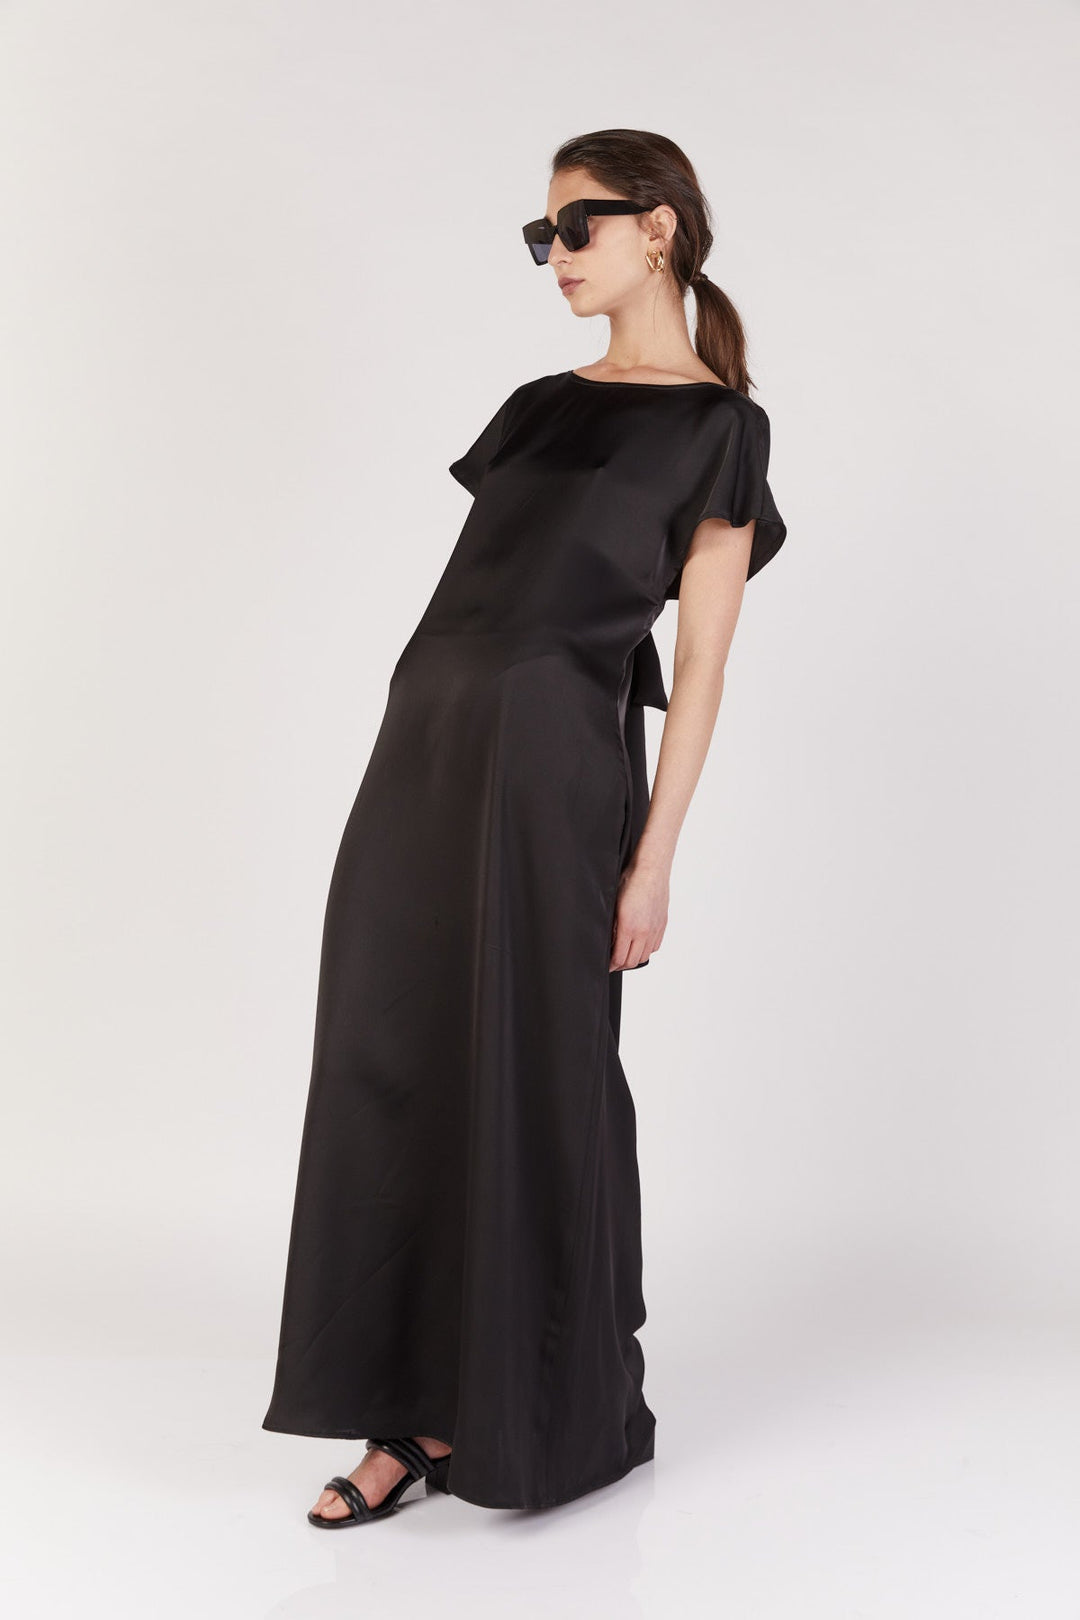 בצבע שחור KELLY שמלת מקסי - Noritamy